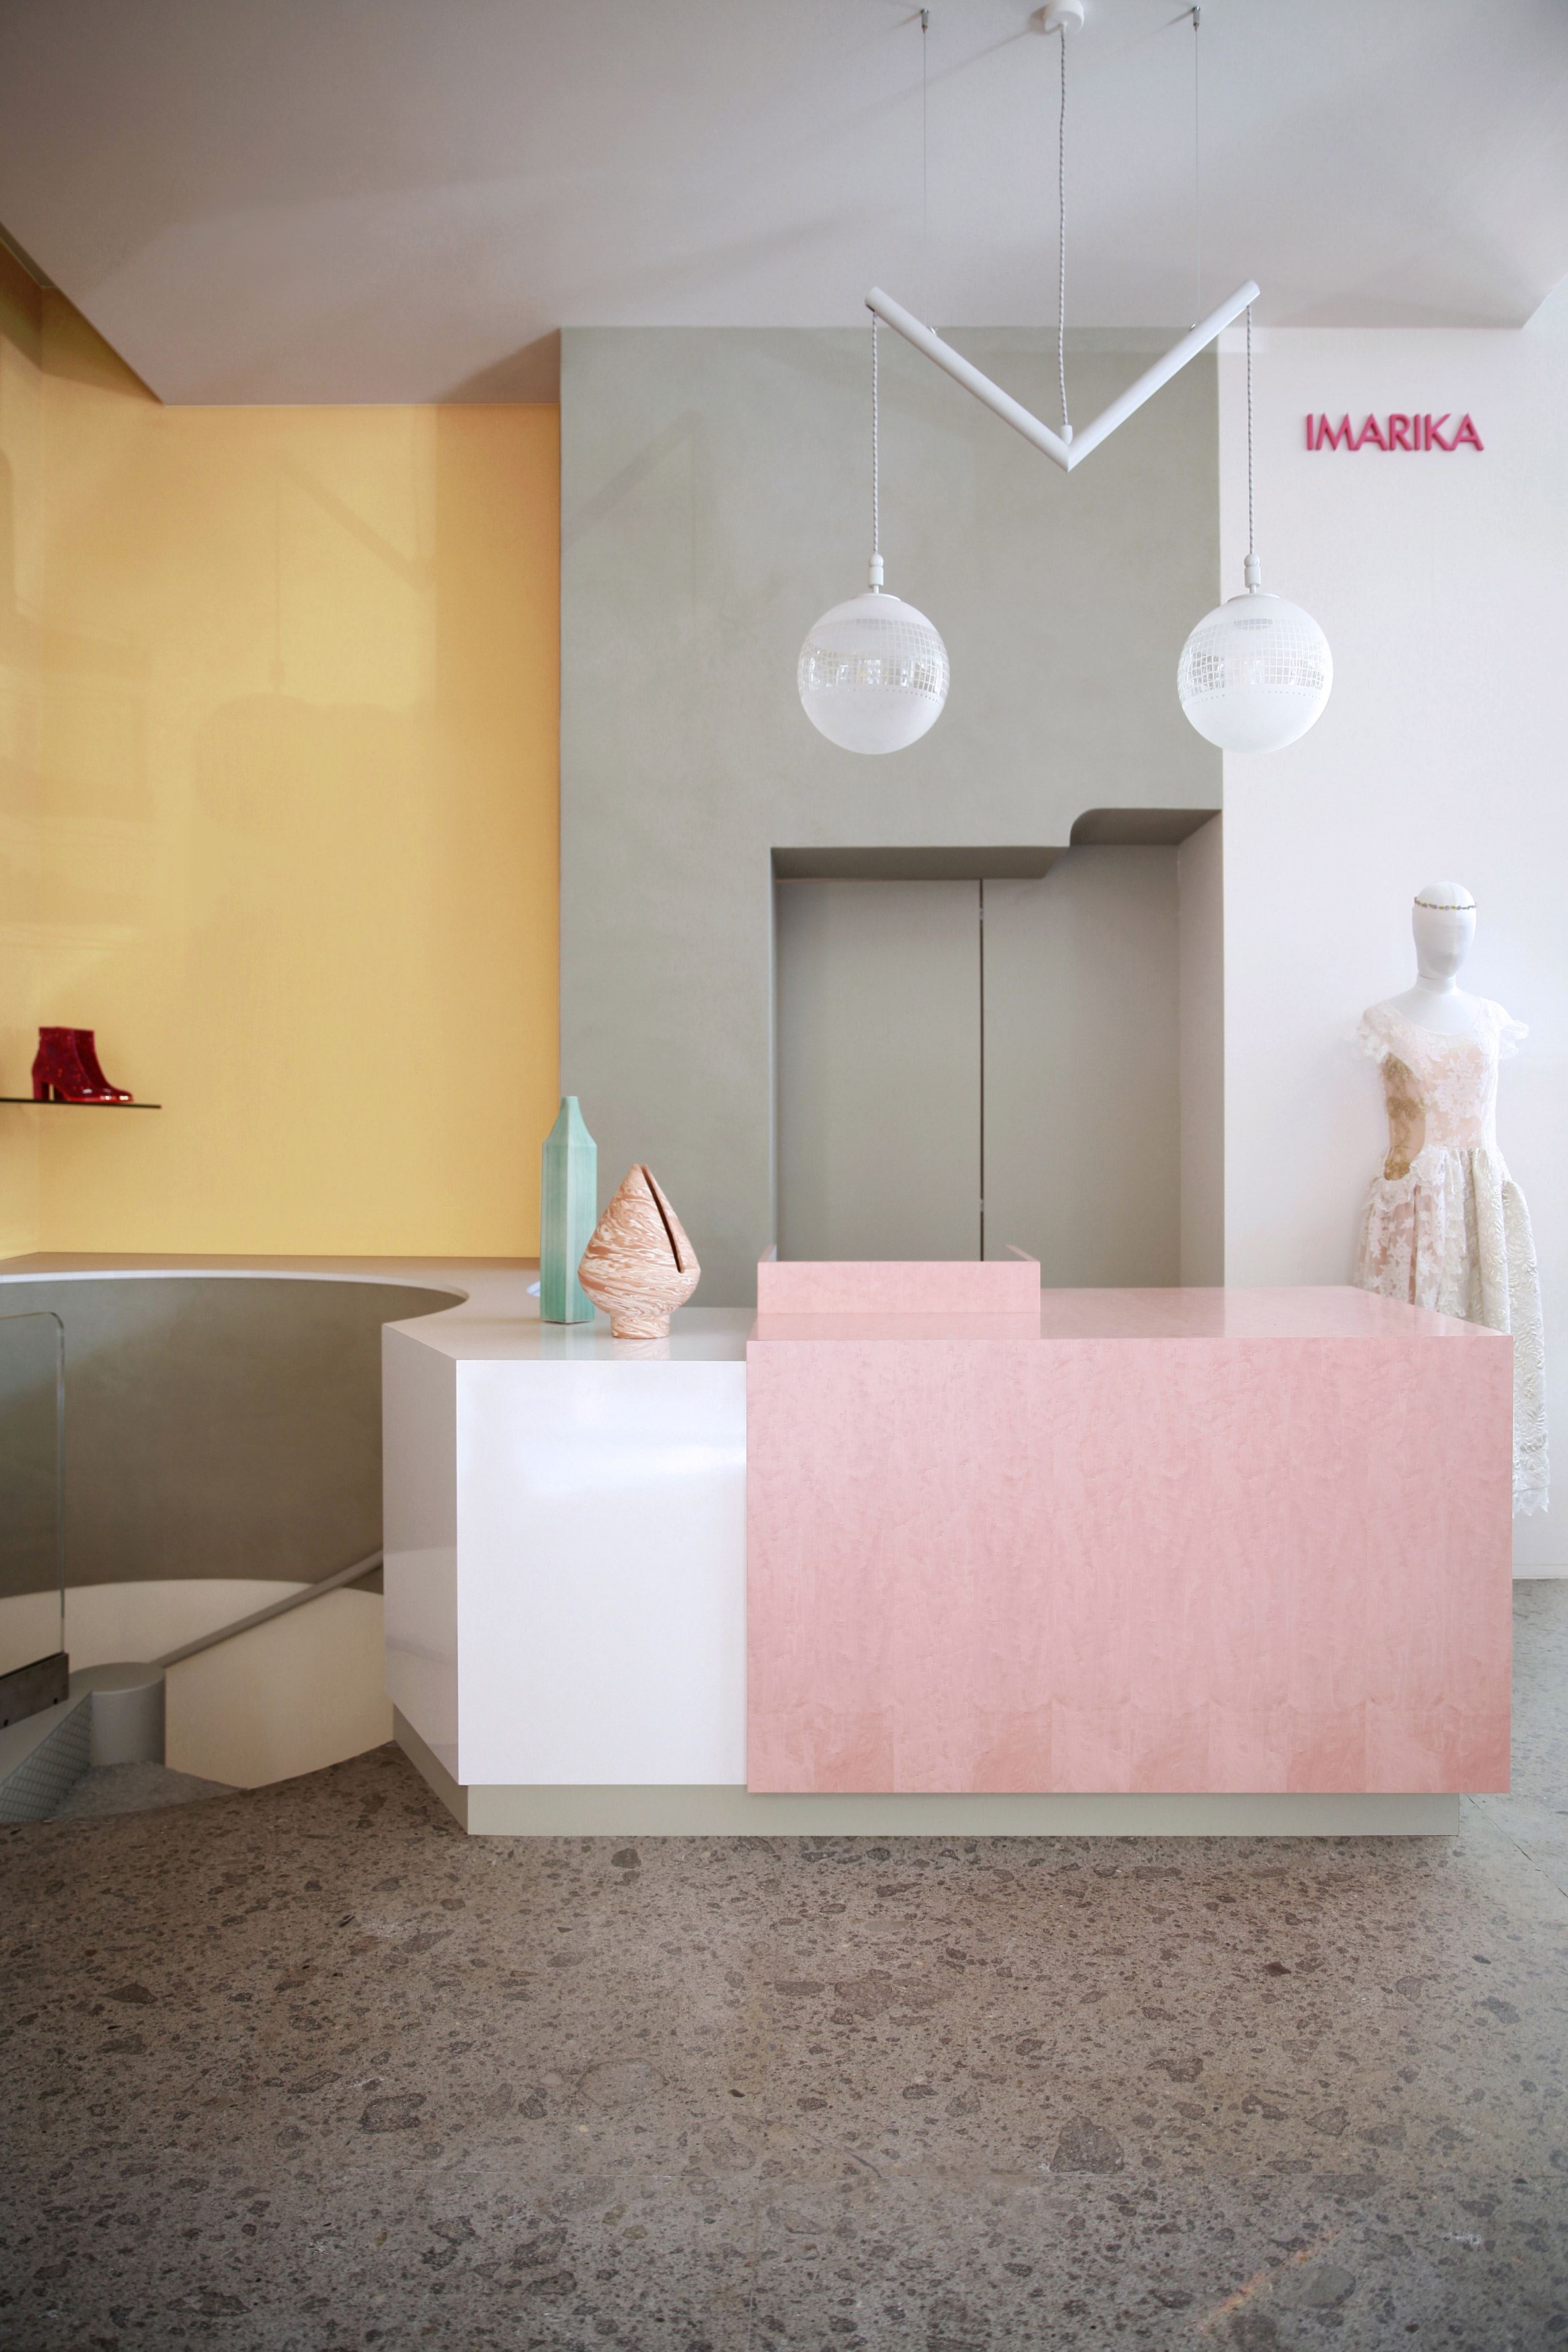  Imarika Boutique, Photo by Carola Ripamonti 